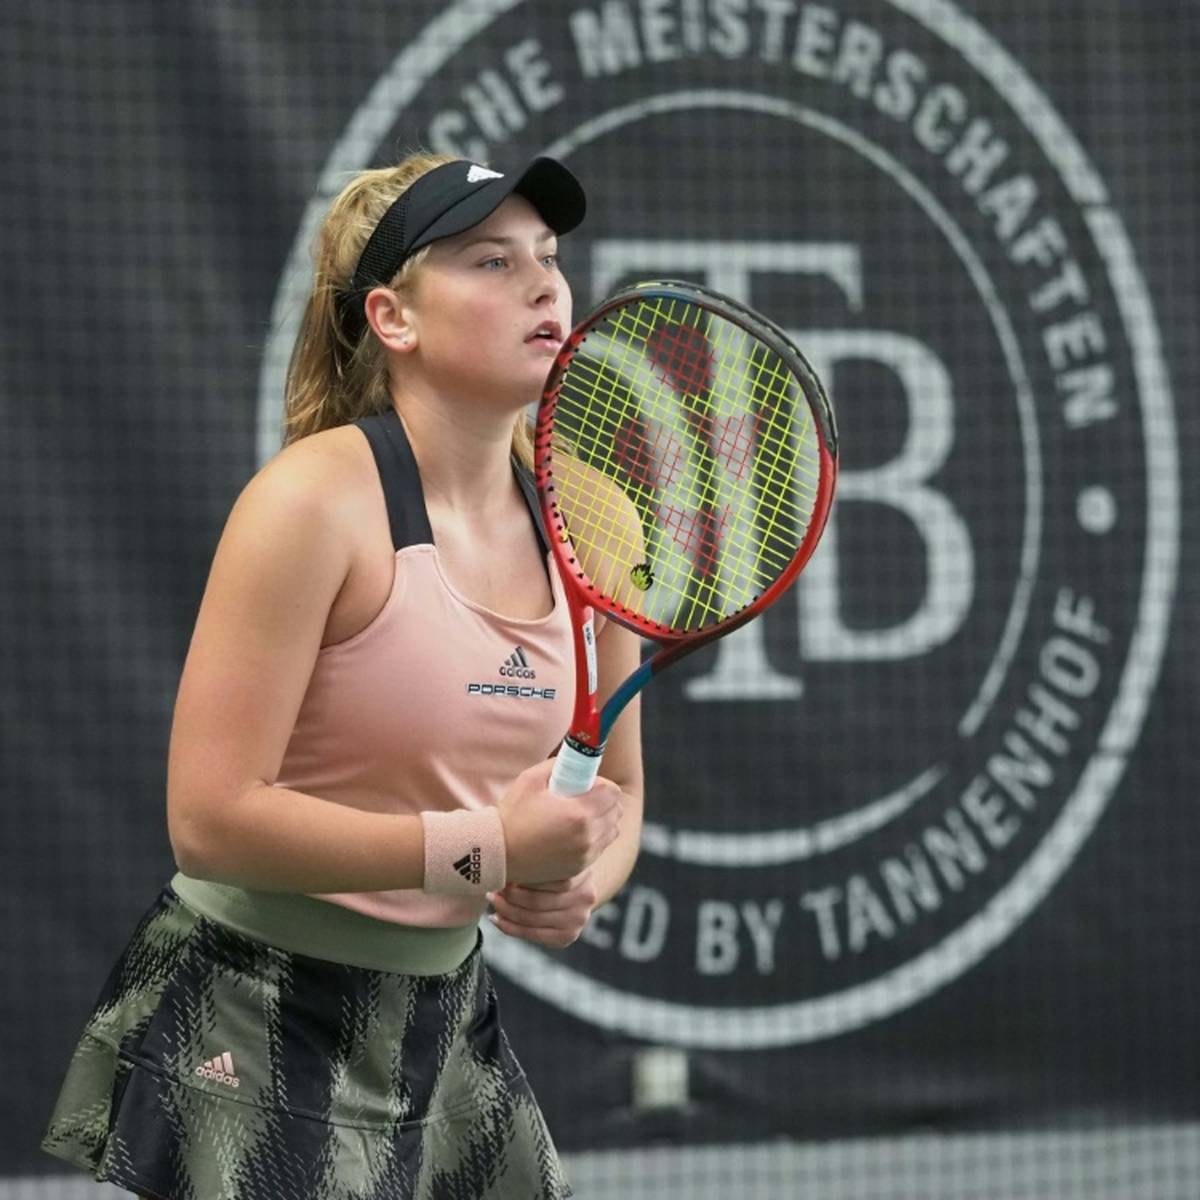 Tennishoffnung Nastasja Schunk erhält eine Wildcard für das WTA-Turnier am Rothenbaum und gibt Mitte Juli ihr Debüt in Hamburg.